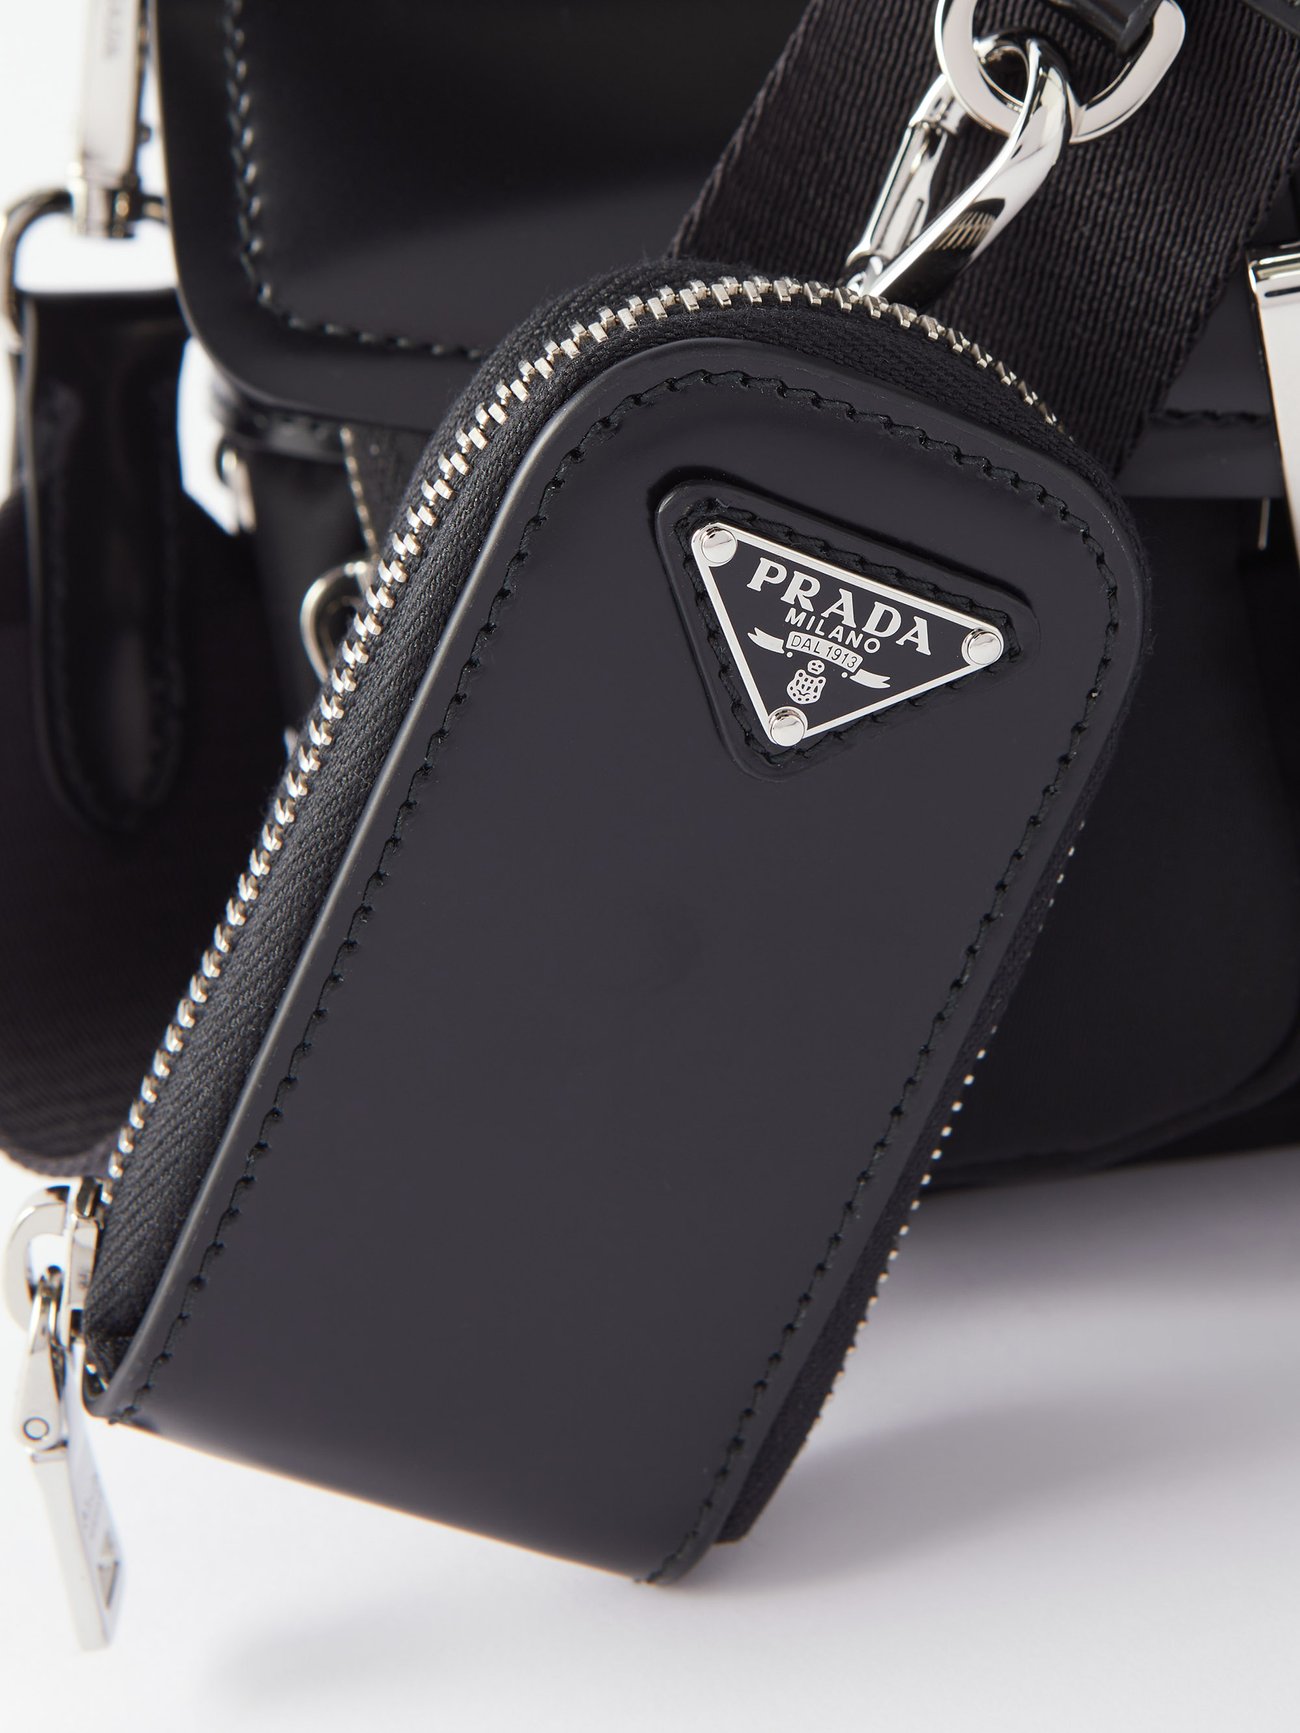 Black Pocket buckled leather shoulder bag, Prada